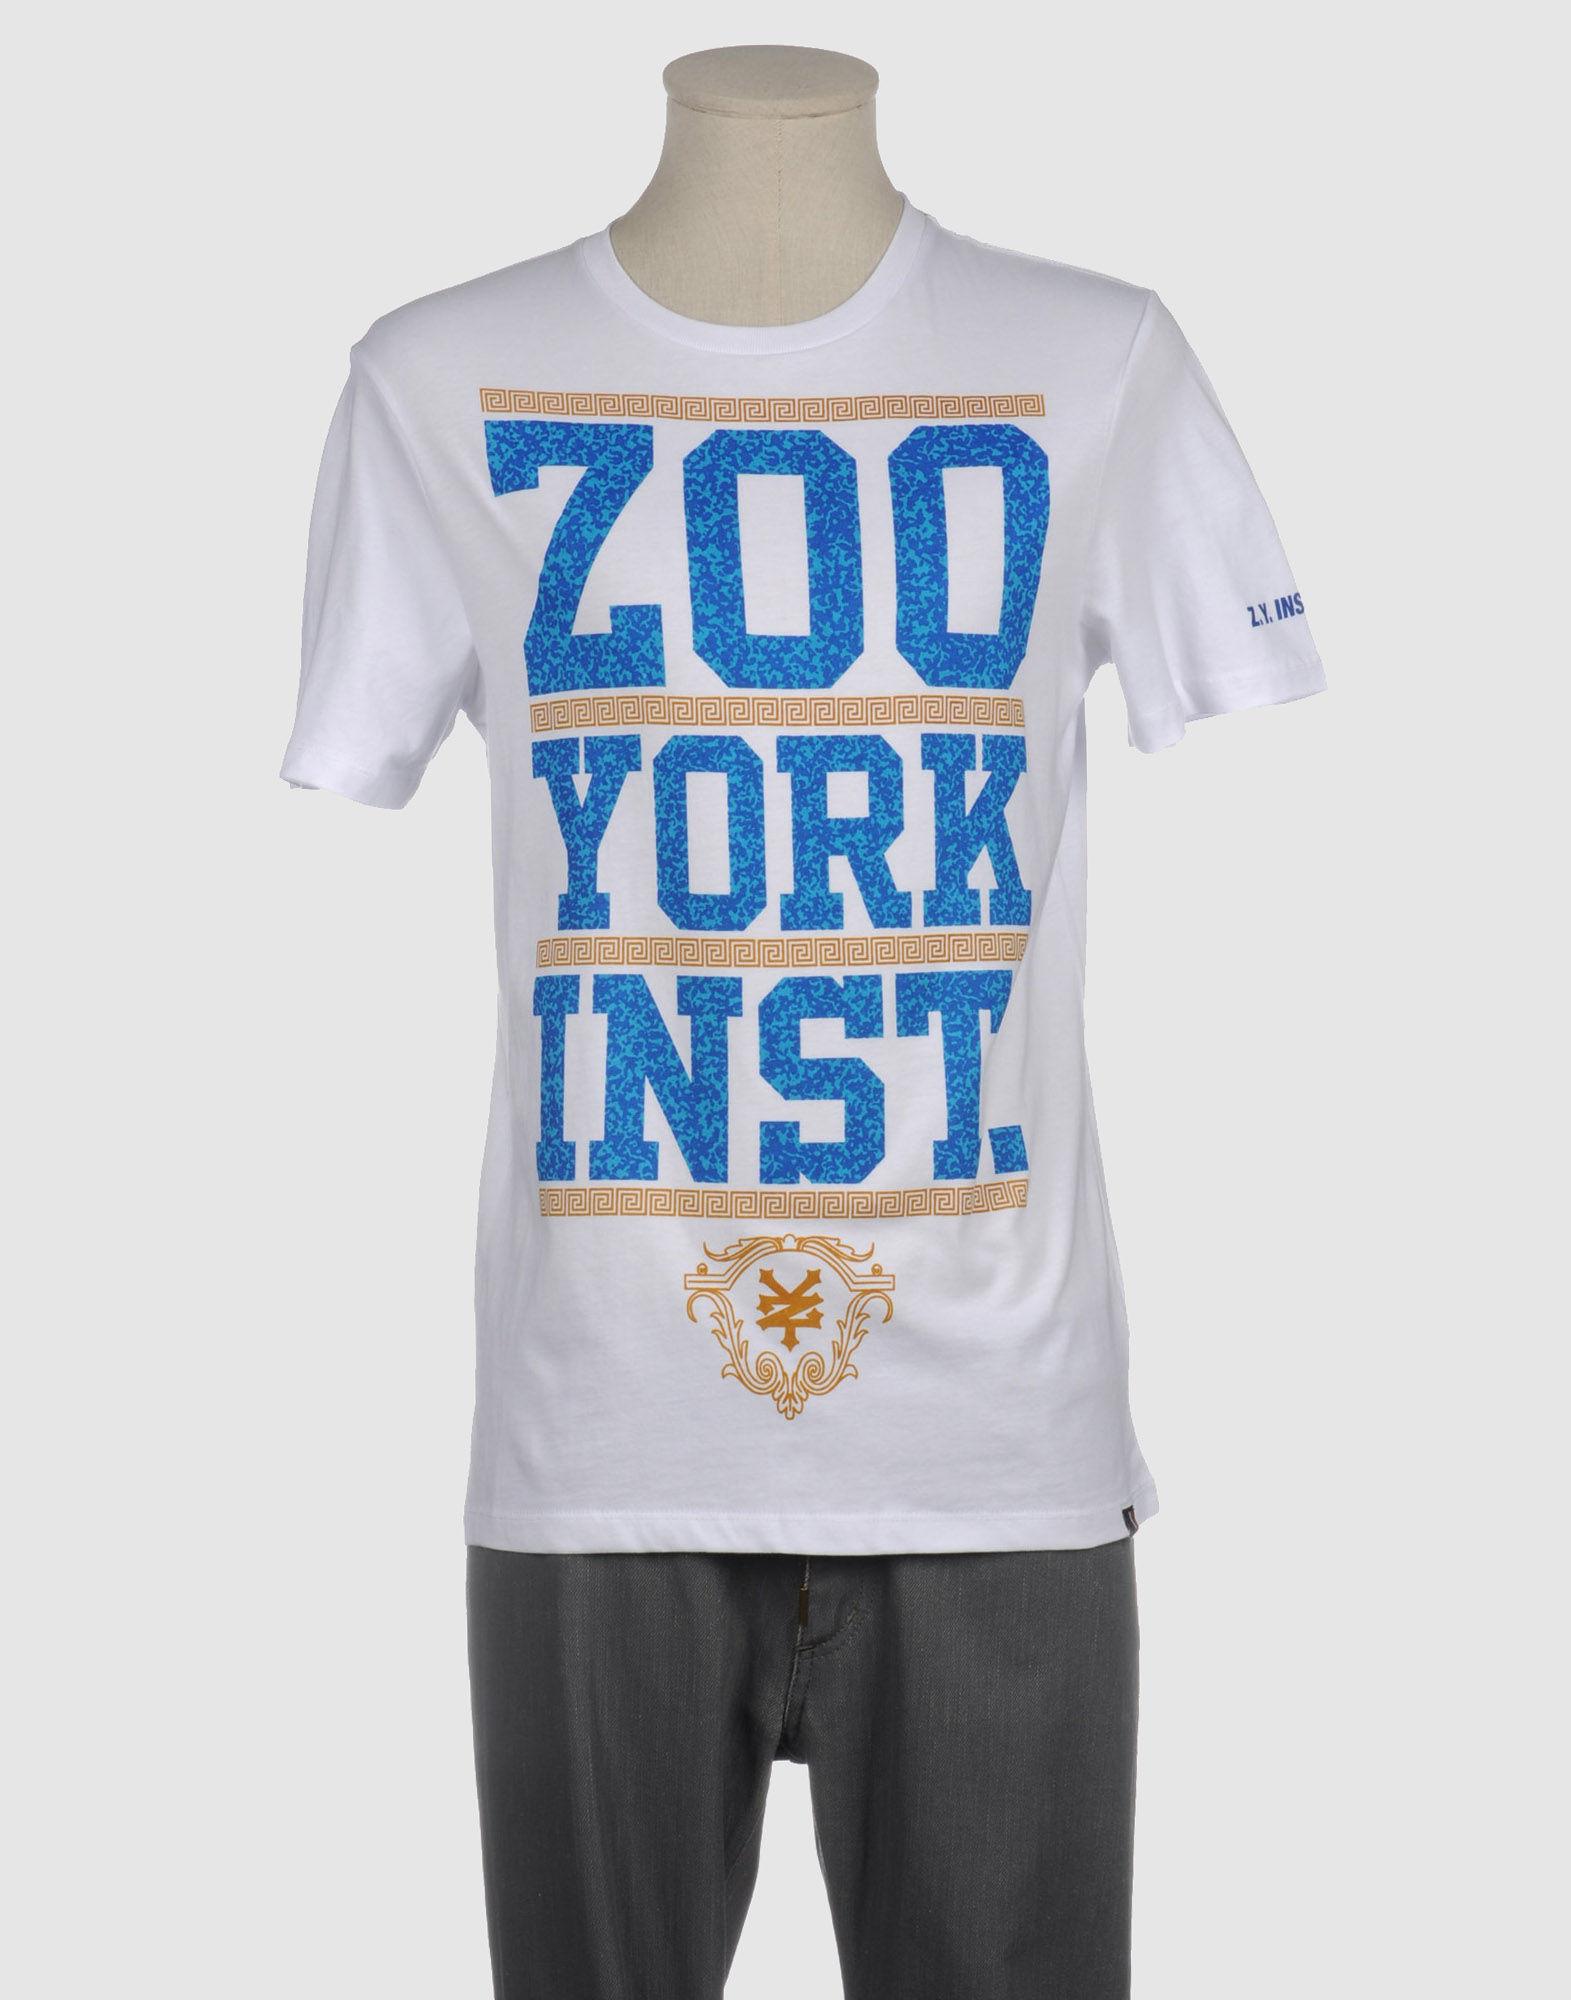 Foto zoo york camisetas de manga corta
